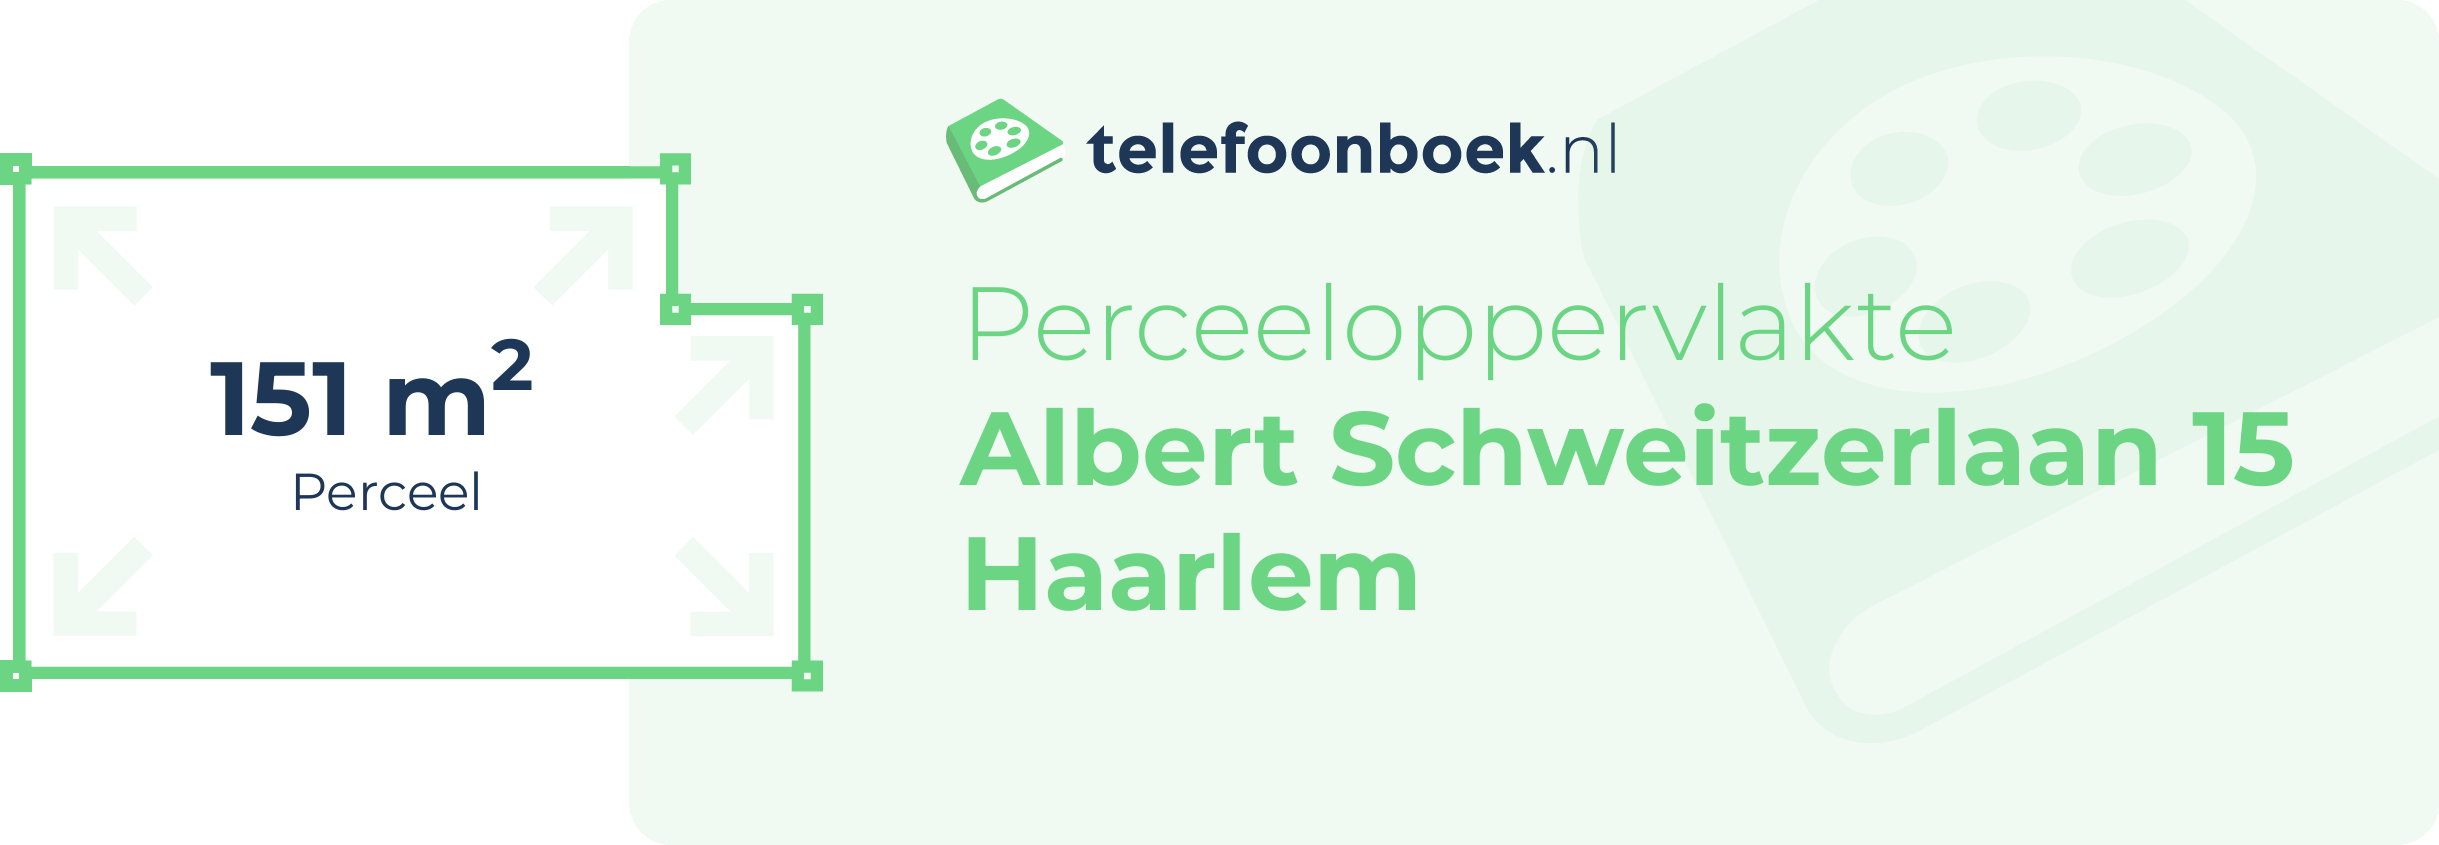 Perceeloppervlakte Albert Schweitzerlaan 15 Haarlem